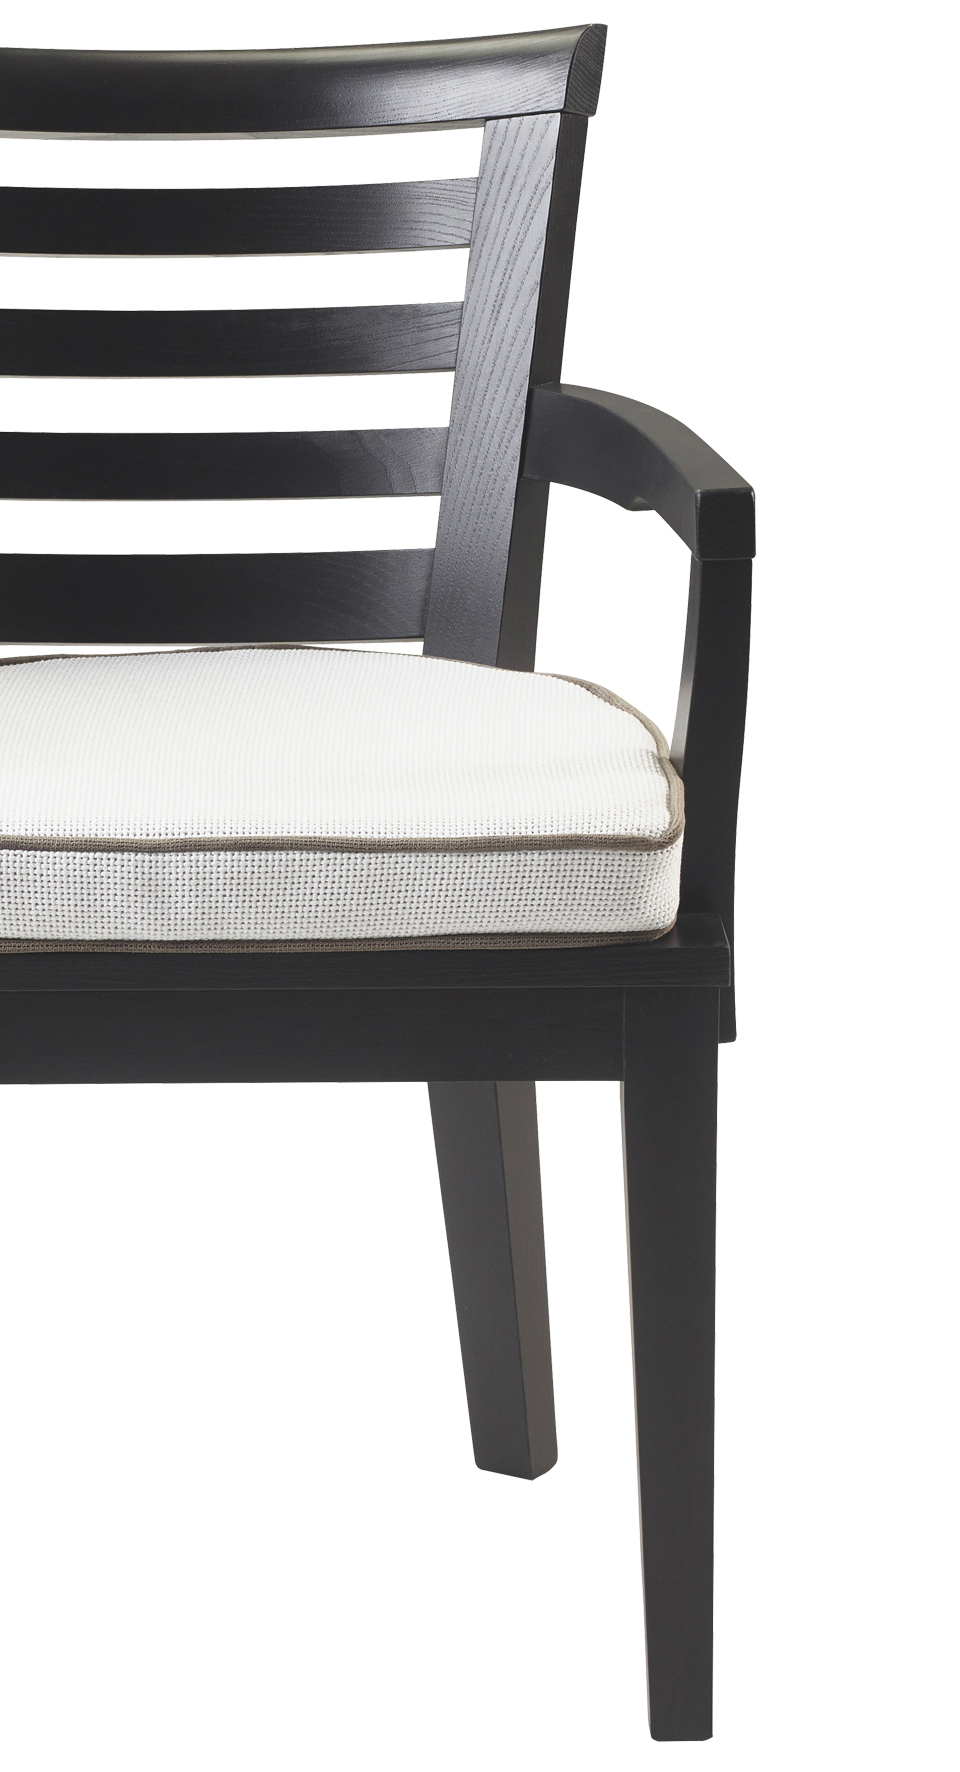 Varenna è una sedia da veranda in legno con o senza braccioli e cuscino in tessuto  del catalogo da esterni di Promemoria | Promemoria